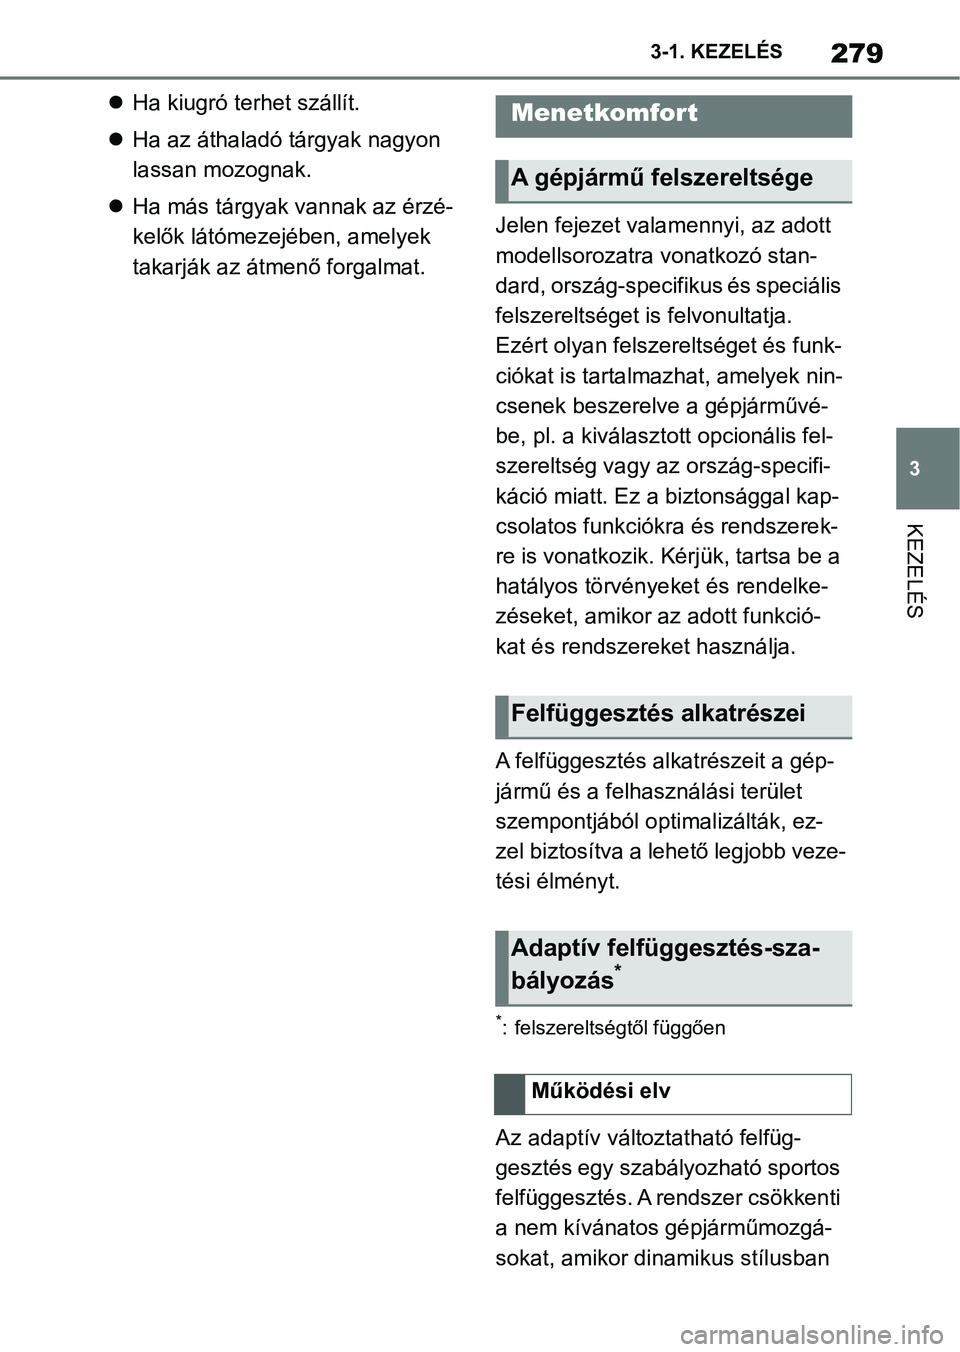 TOYOTA SUPRA 2020  Kezelési útmutató (in Hungarian) 279
3
3-1. KEZELÉS
KEZELÉS

Ha kiugró terhet szállít.
 Ha az áthaladó tárgyak nagyon 
lassan mozognak.
 Ha más tárgyak vannak az érzé-
kelők látómezejében, amelyek 
takarják 